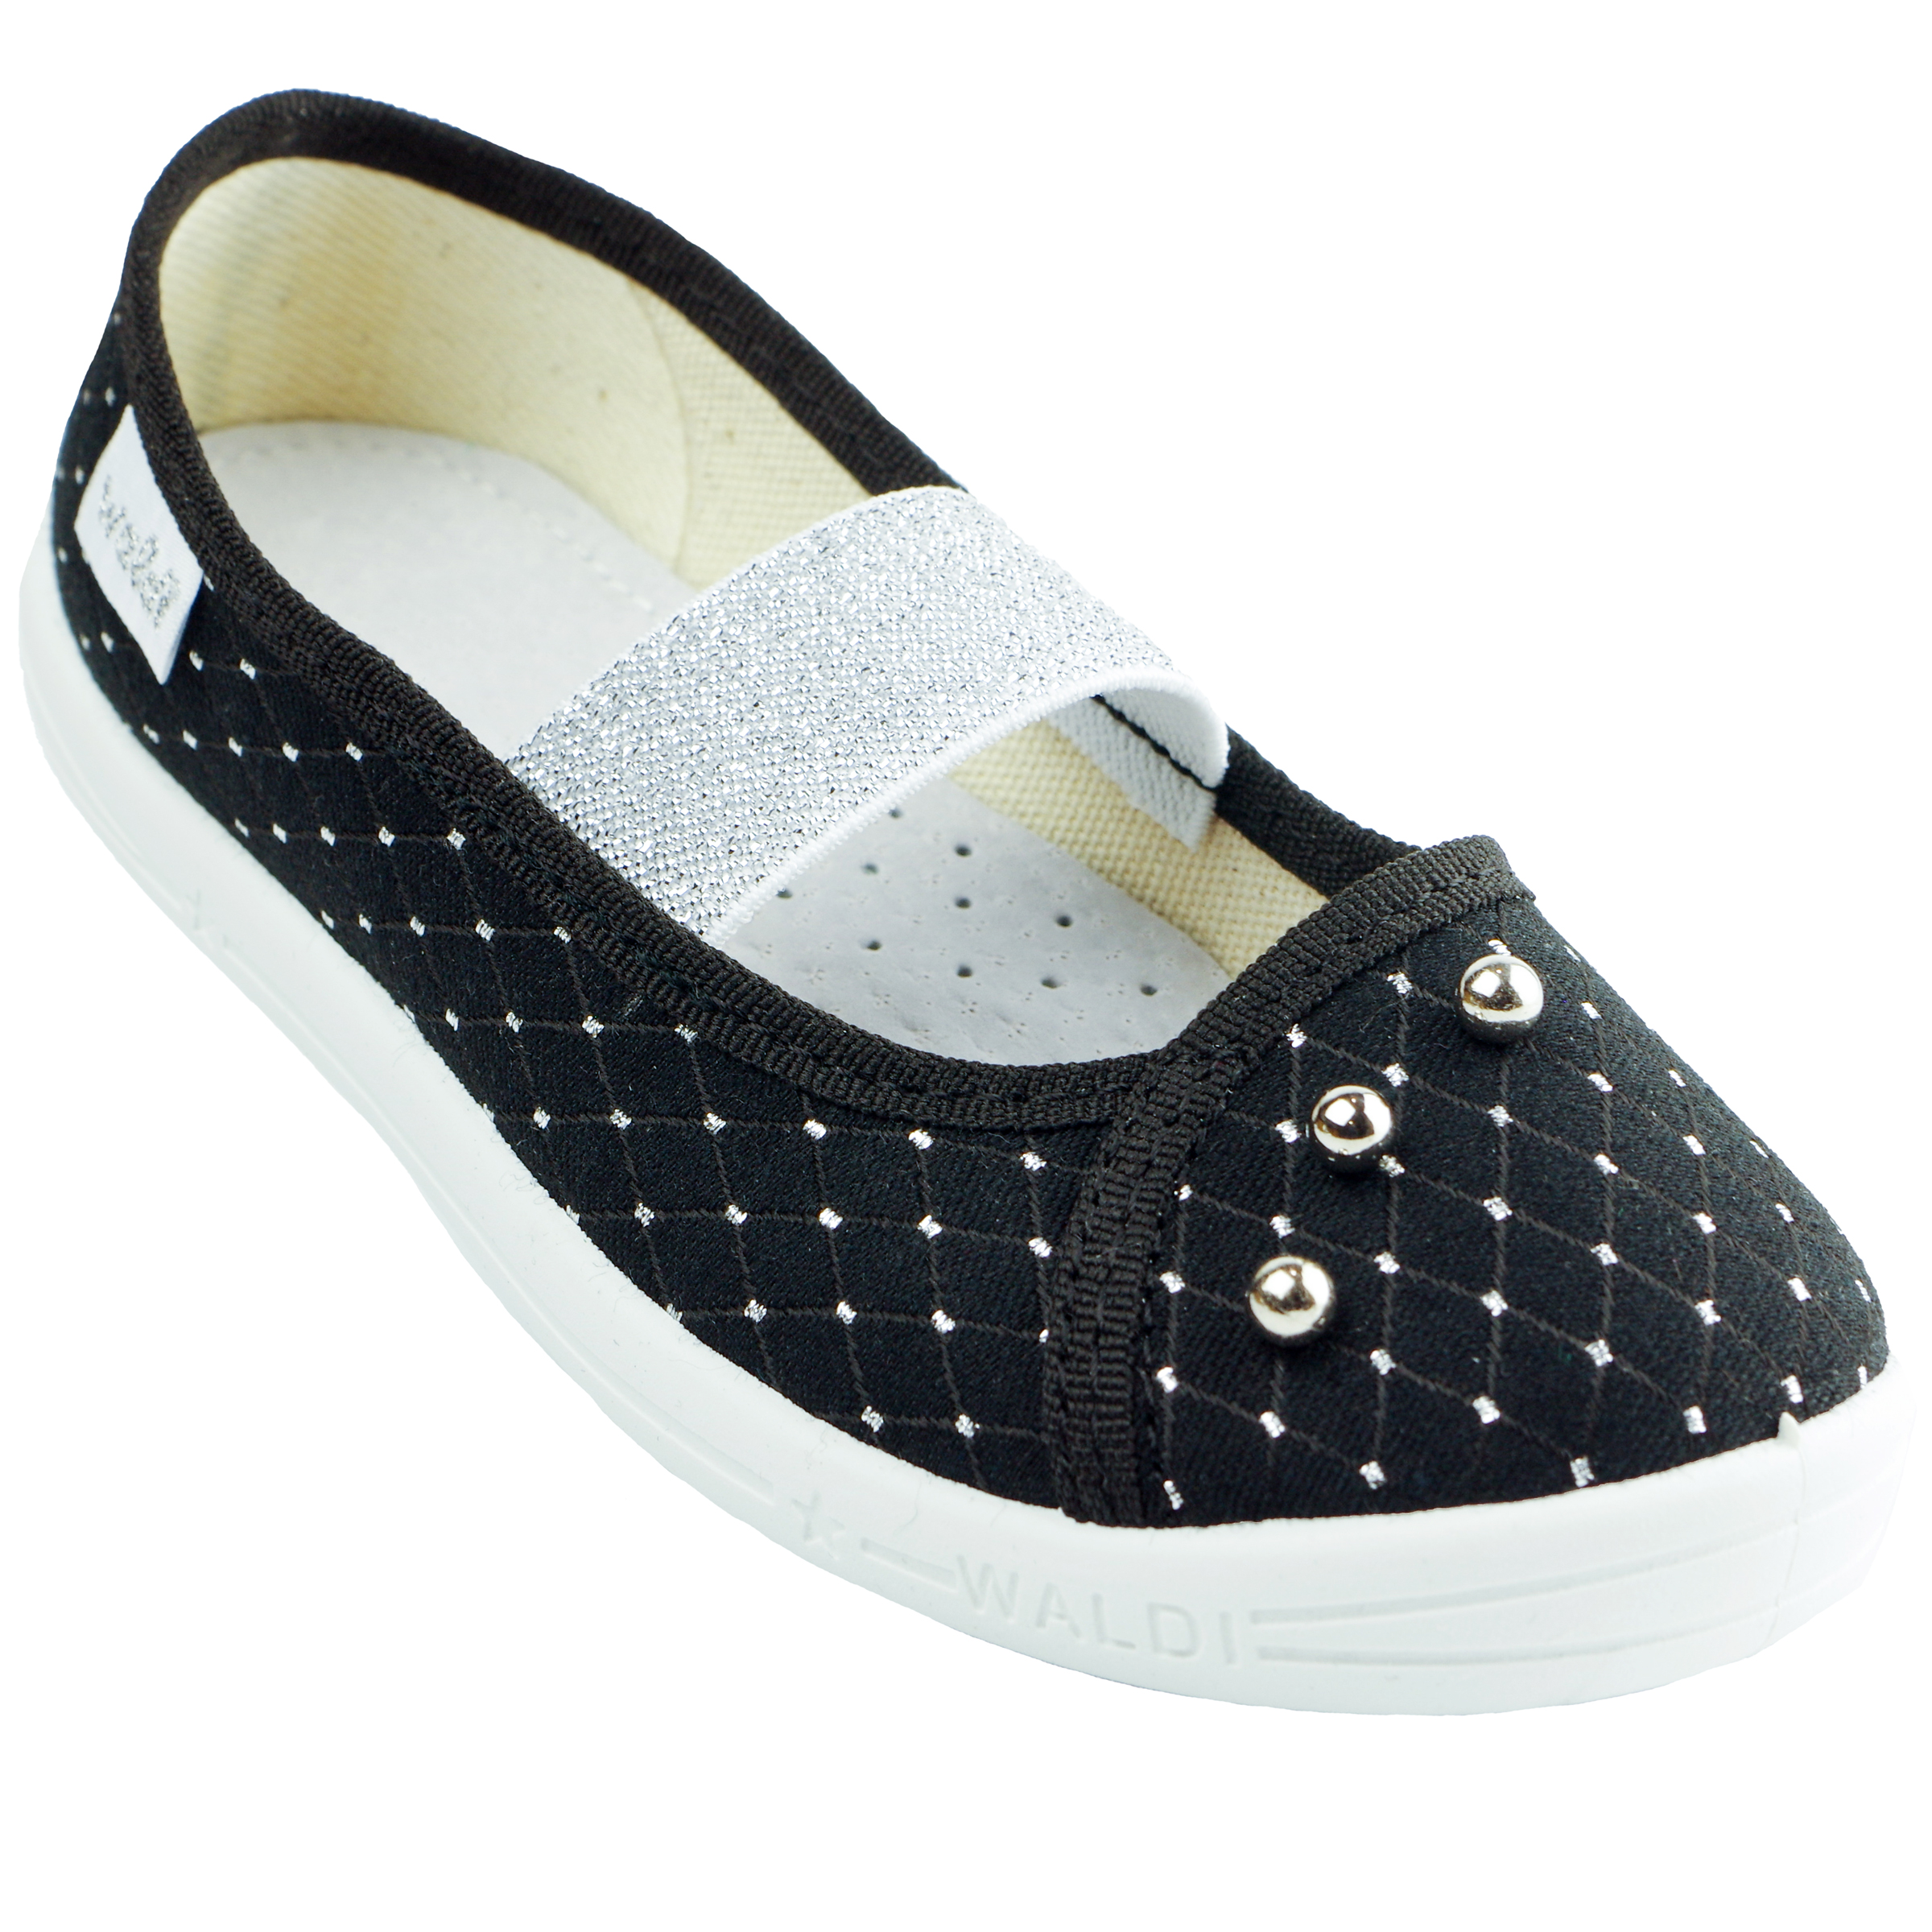 Текстильная обувь для девочек Тапочки Жемчужина (2129) цвет Черный 27-34 размеры – Sole Kids